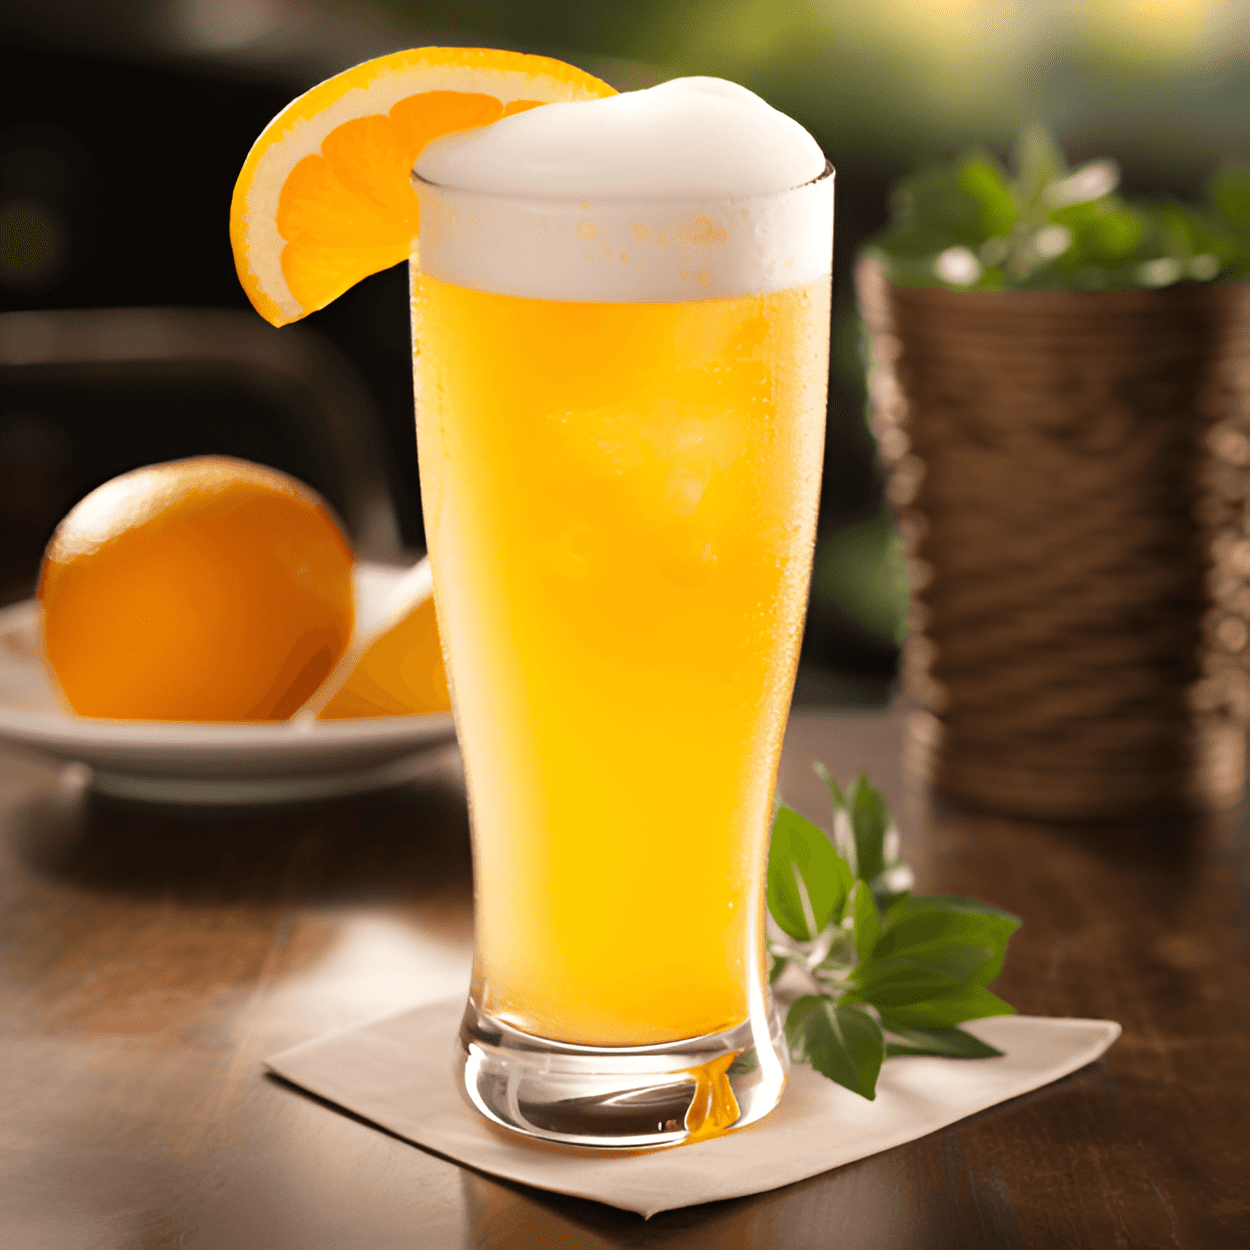 Manmosa Cóctel Receta - El Manmosa es un cóctel refrescante y de cuerpo completo con una fuerte base de cerveza. El jugo de naranja añade una nota dulce y cítrica que equilibra la amargura de la cerveza. Es una bebida robusta y contundente con un final suave.